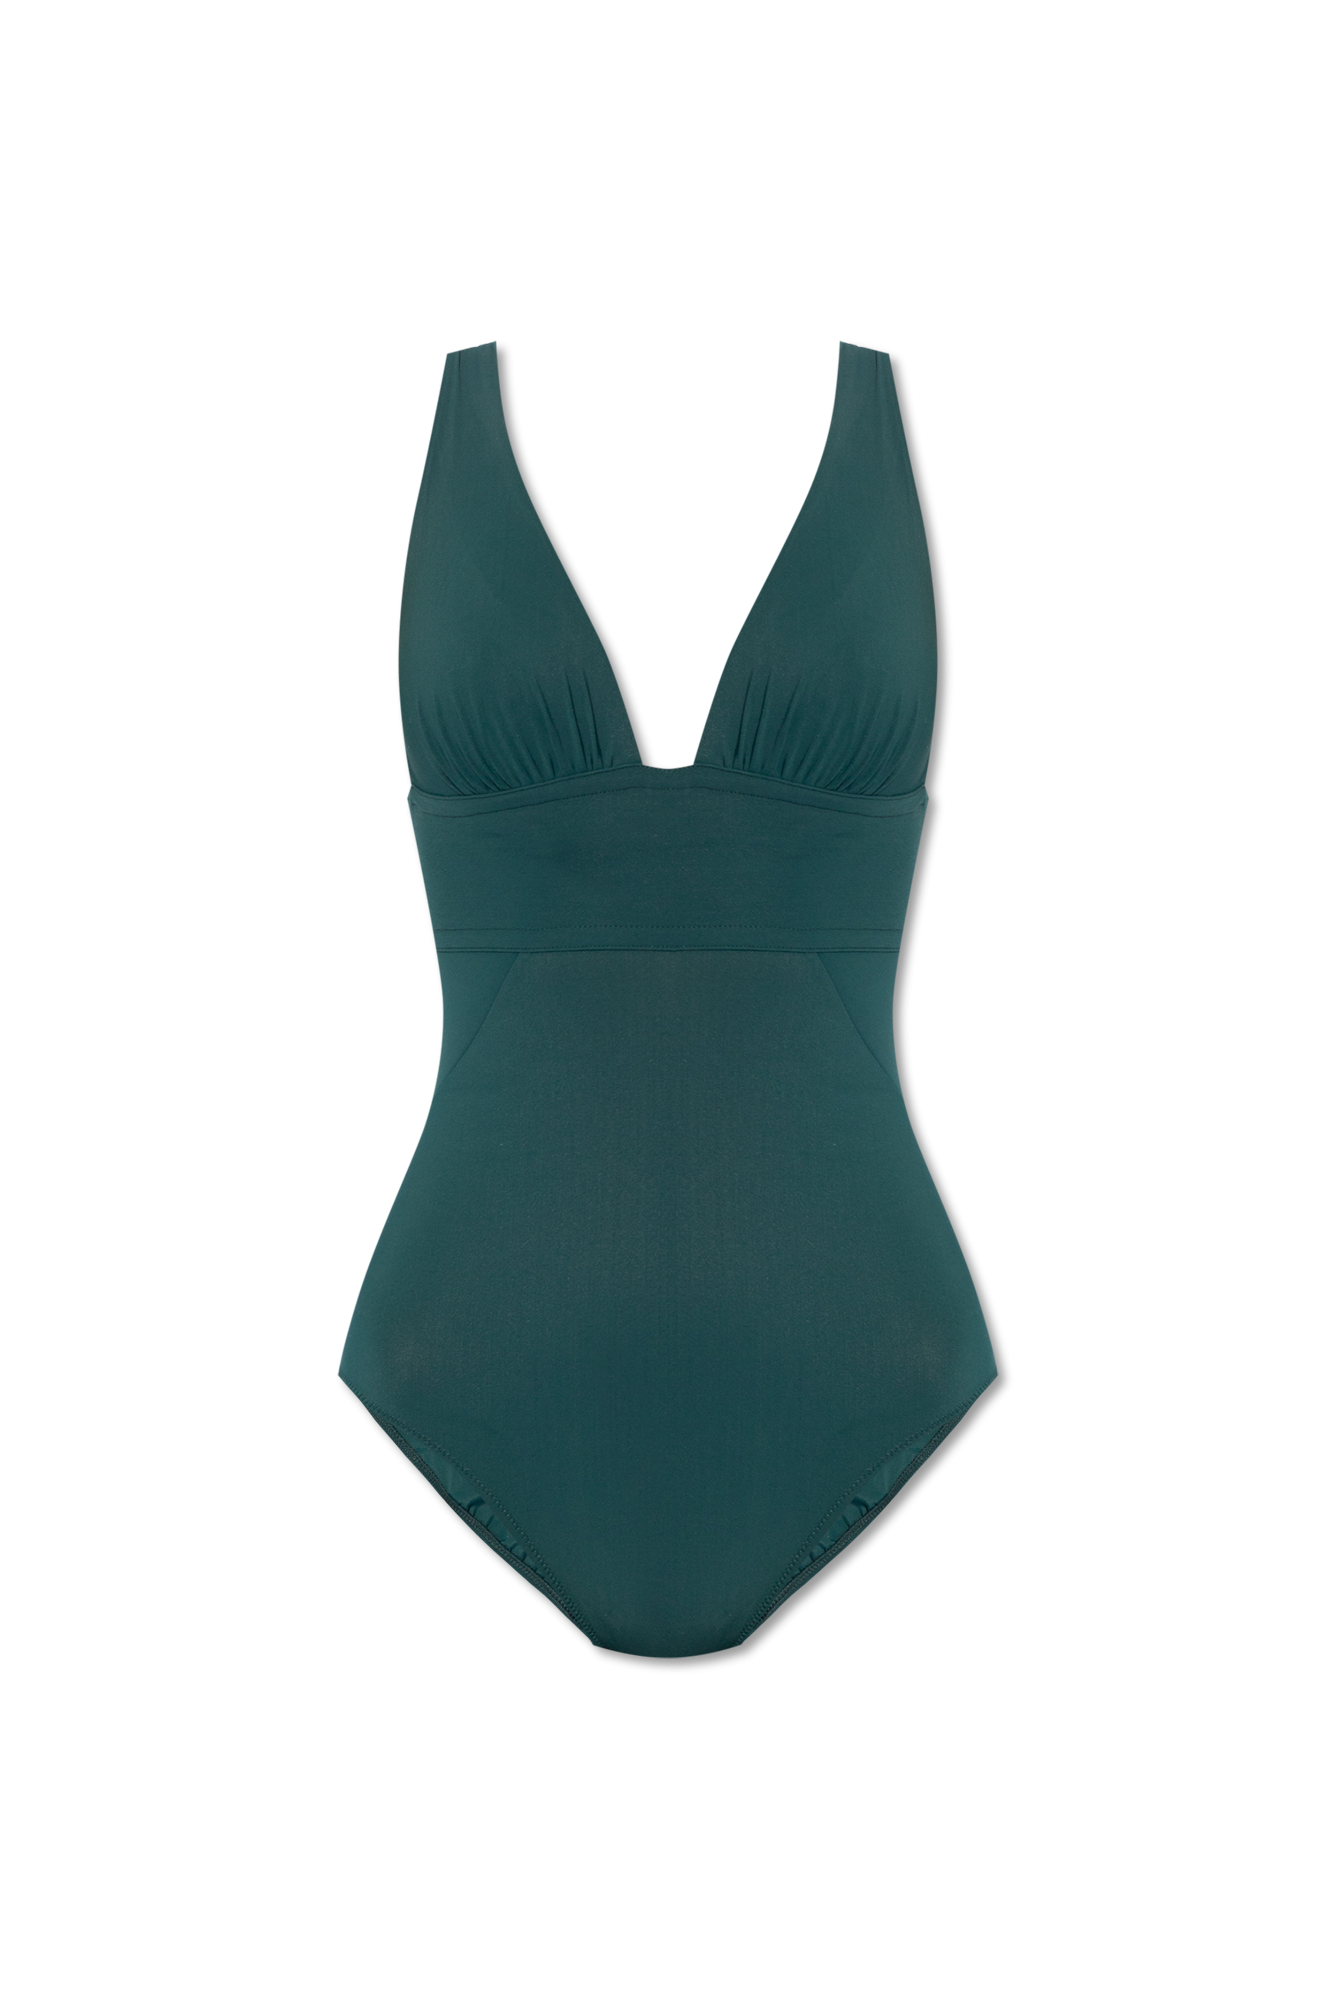 Pain de Sucre ‘Capri’ one-piece swimsuit